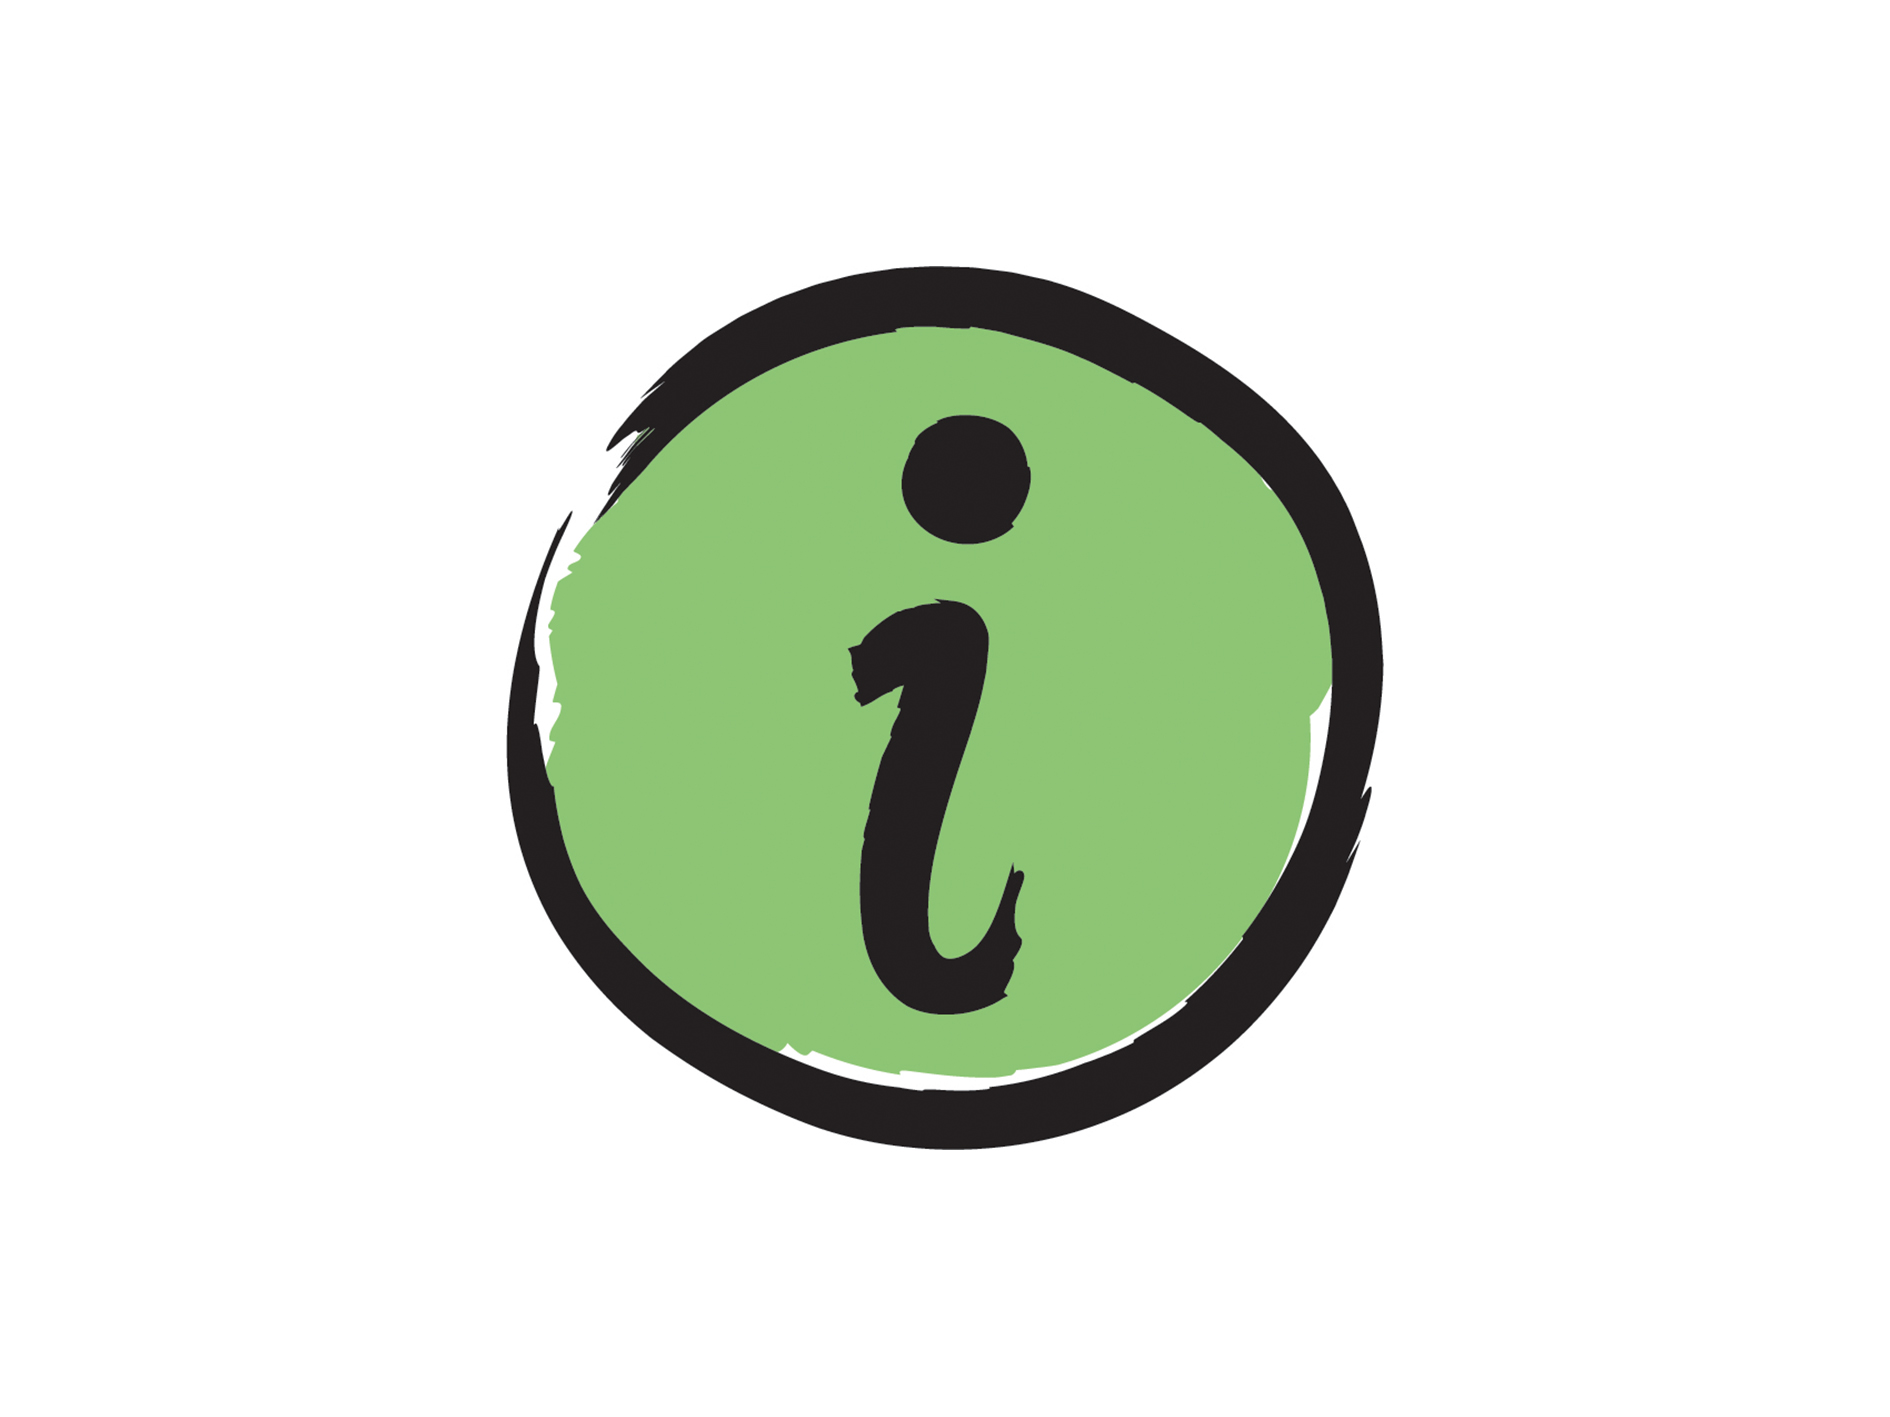 Une icône de la lettre « I » pour « Information ».